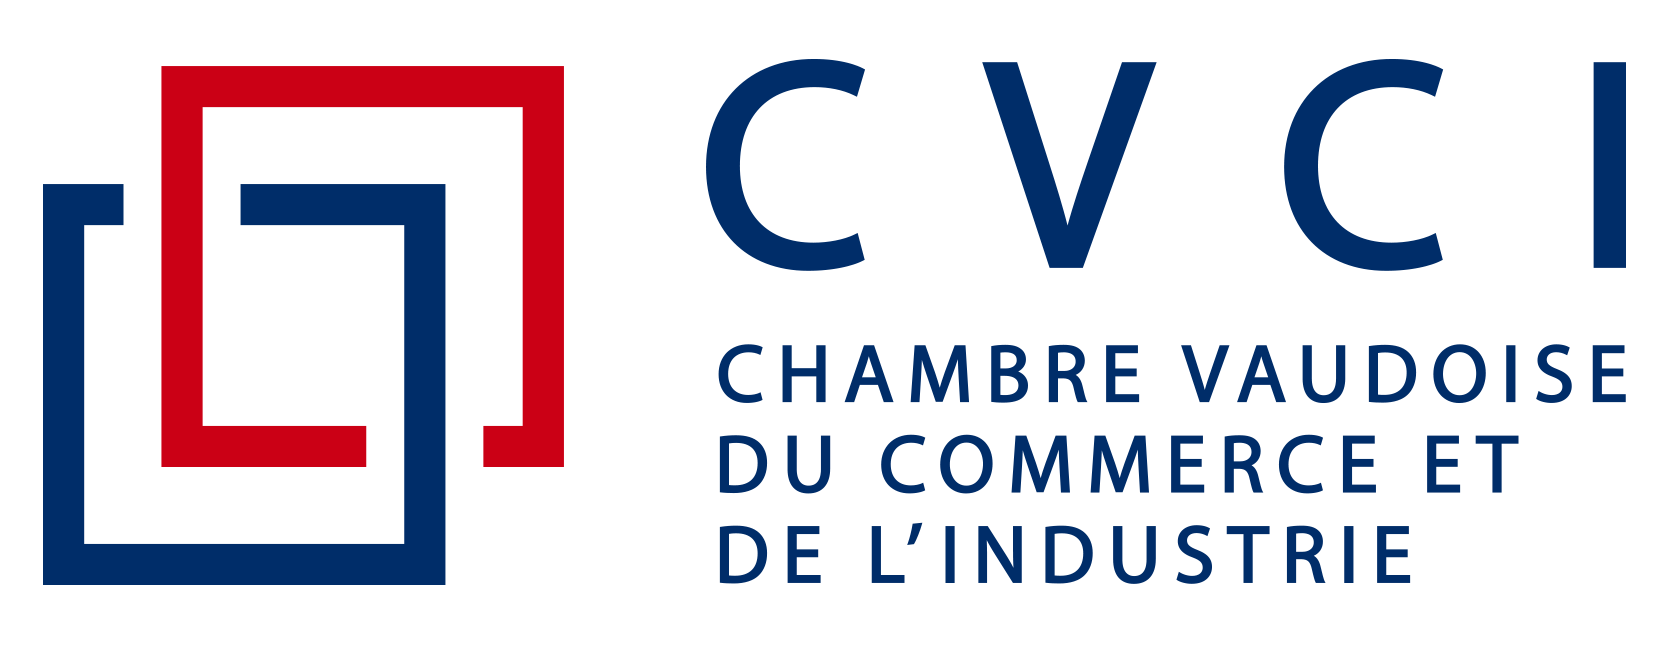 Logo de la Chambre vaudoise du commerce et de l'industrie